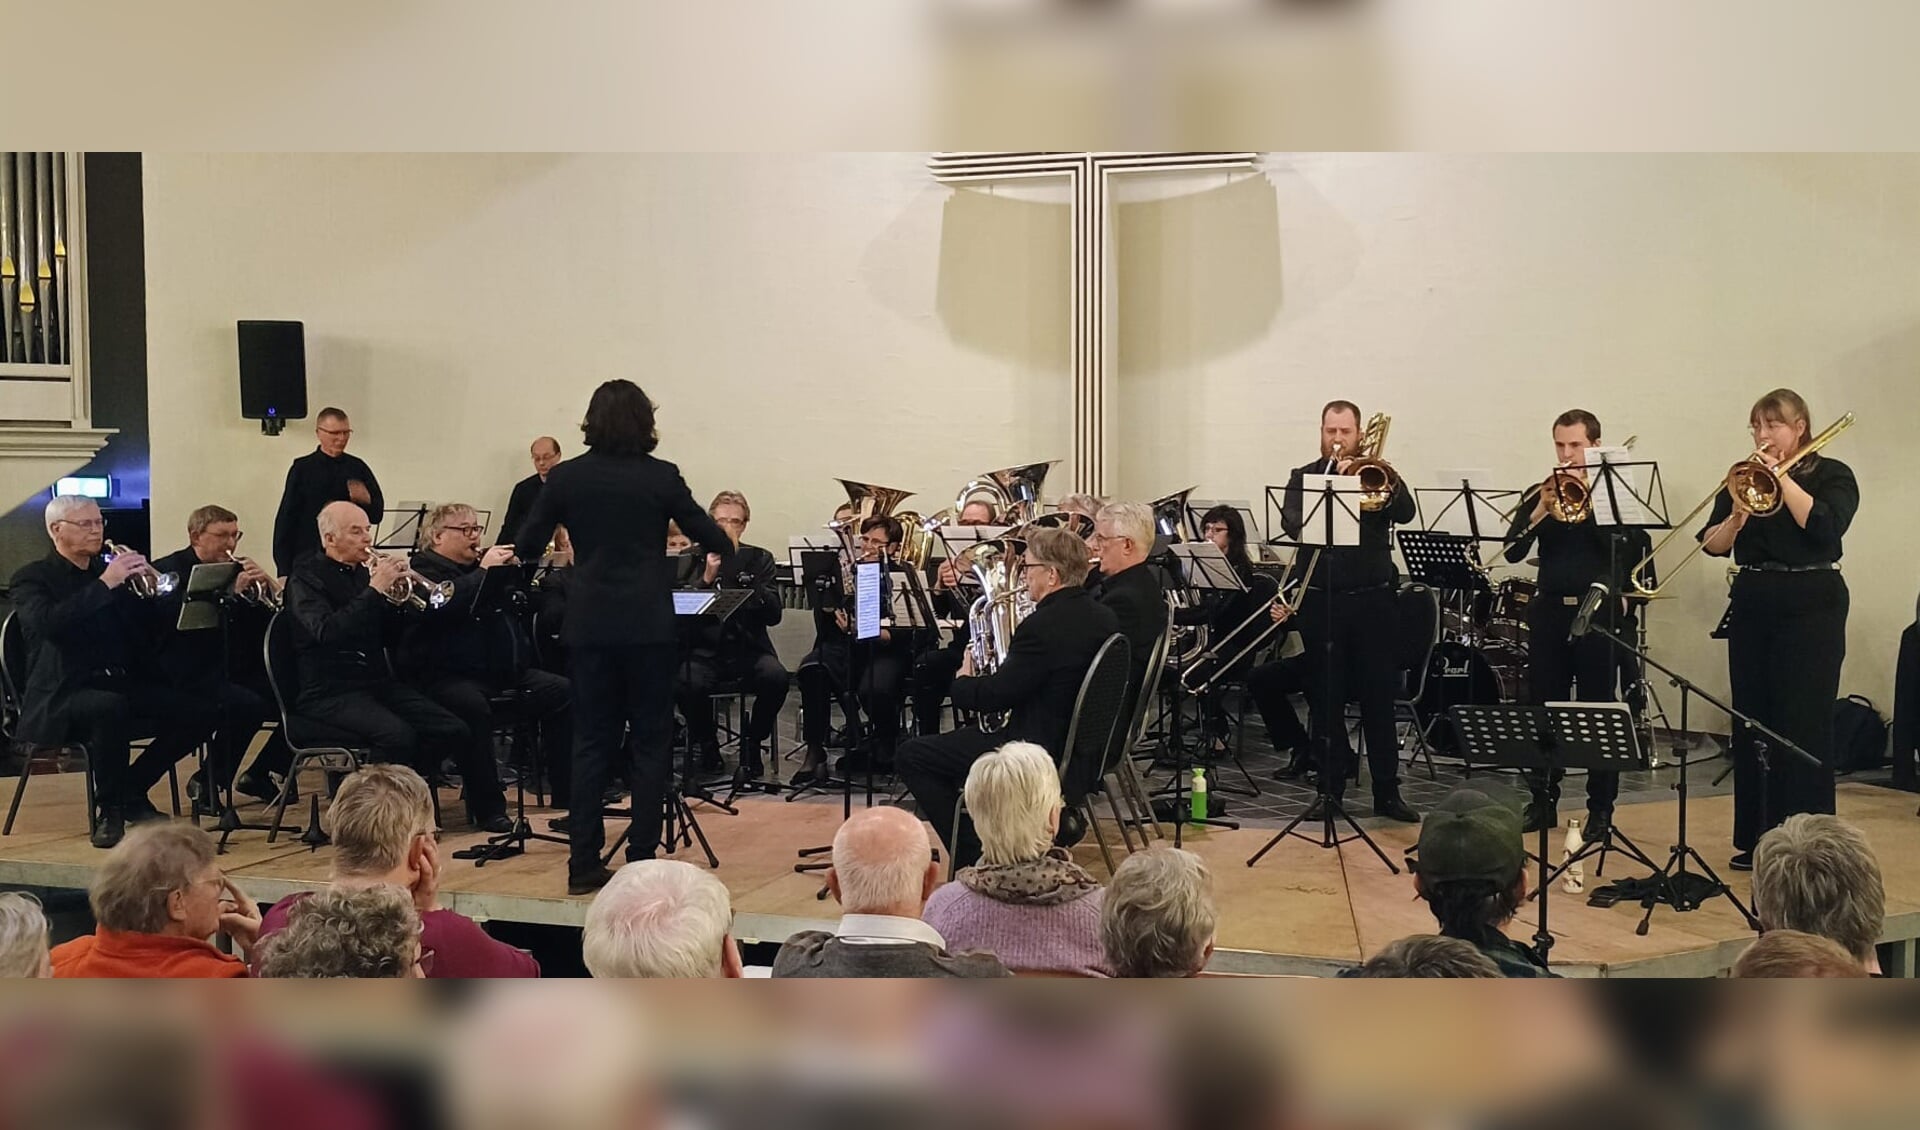 Brassband Almere in actie op festival in Zeewolde